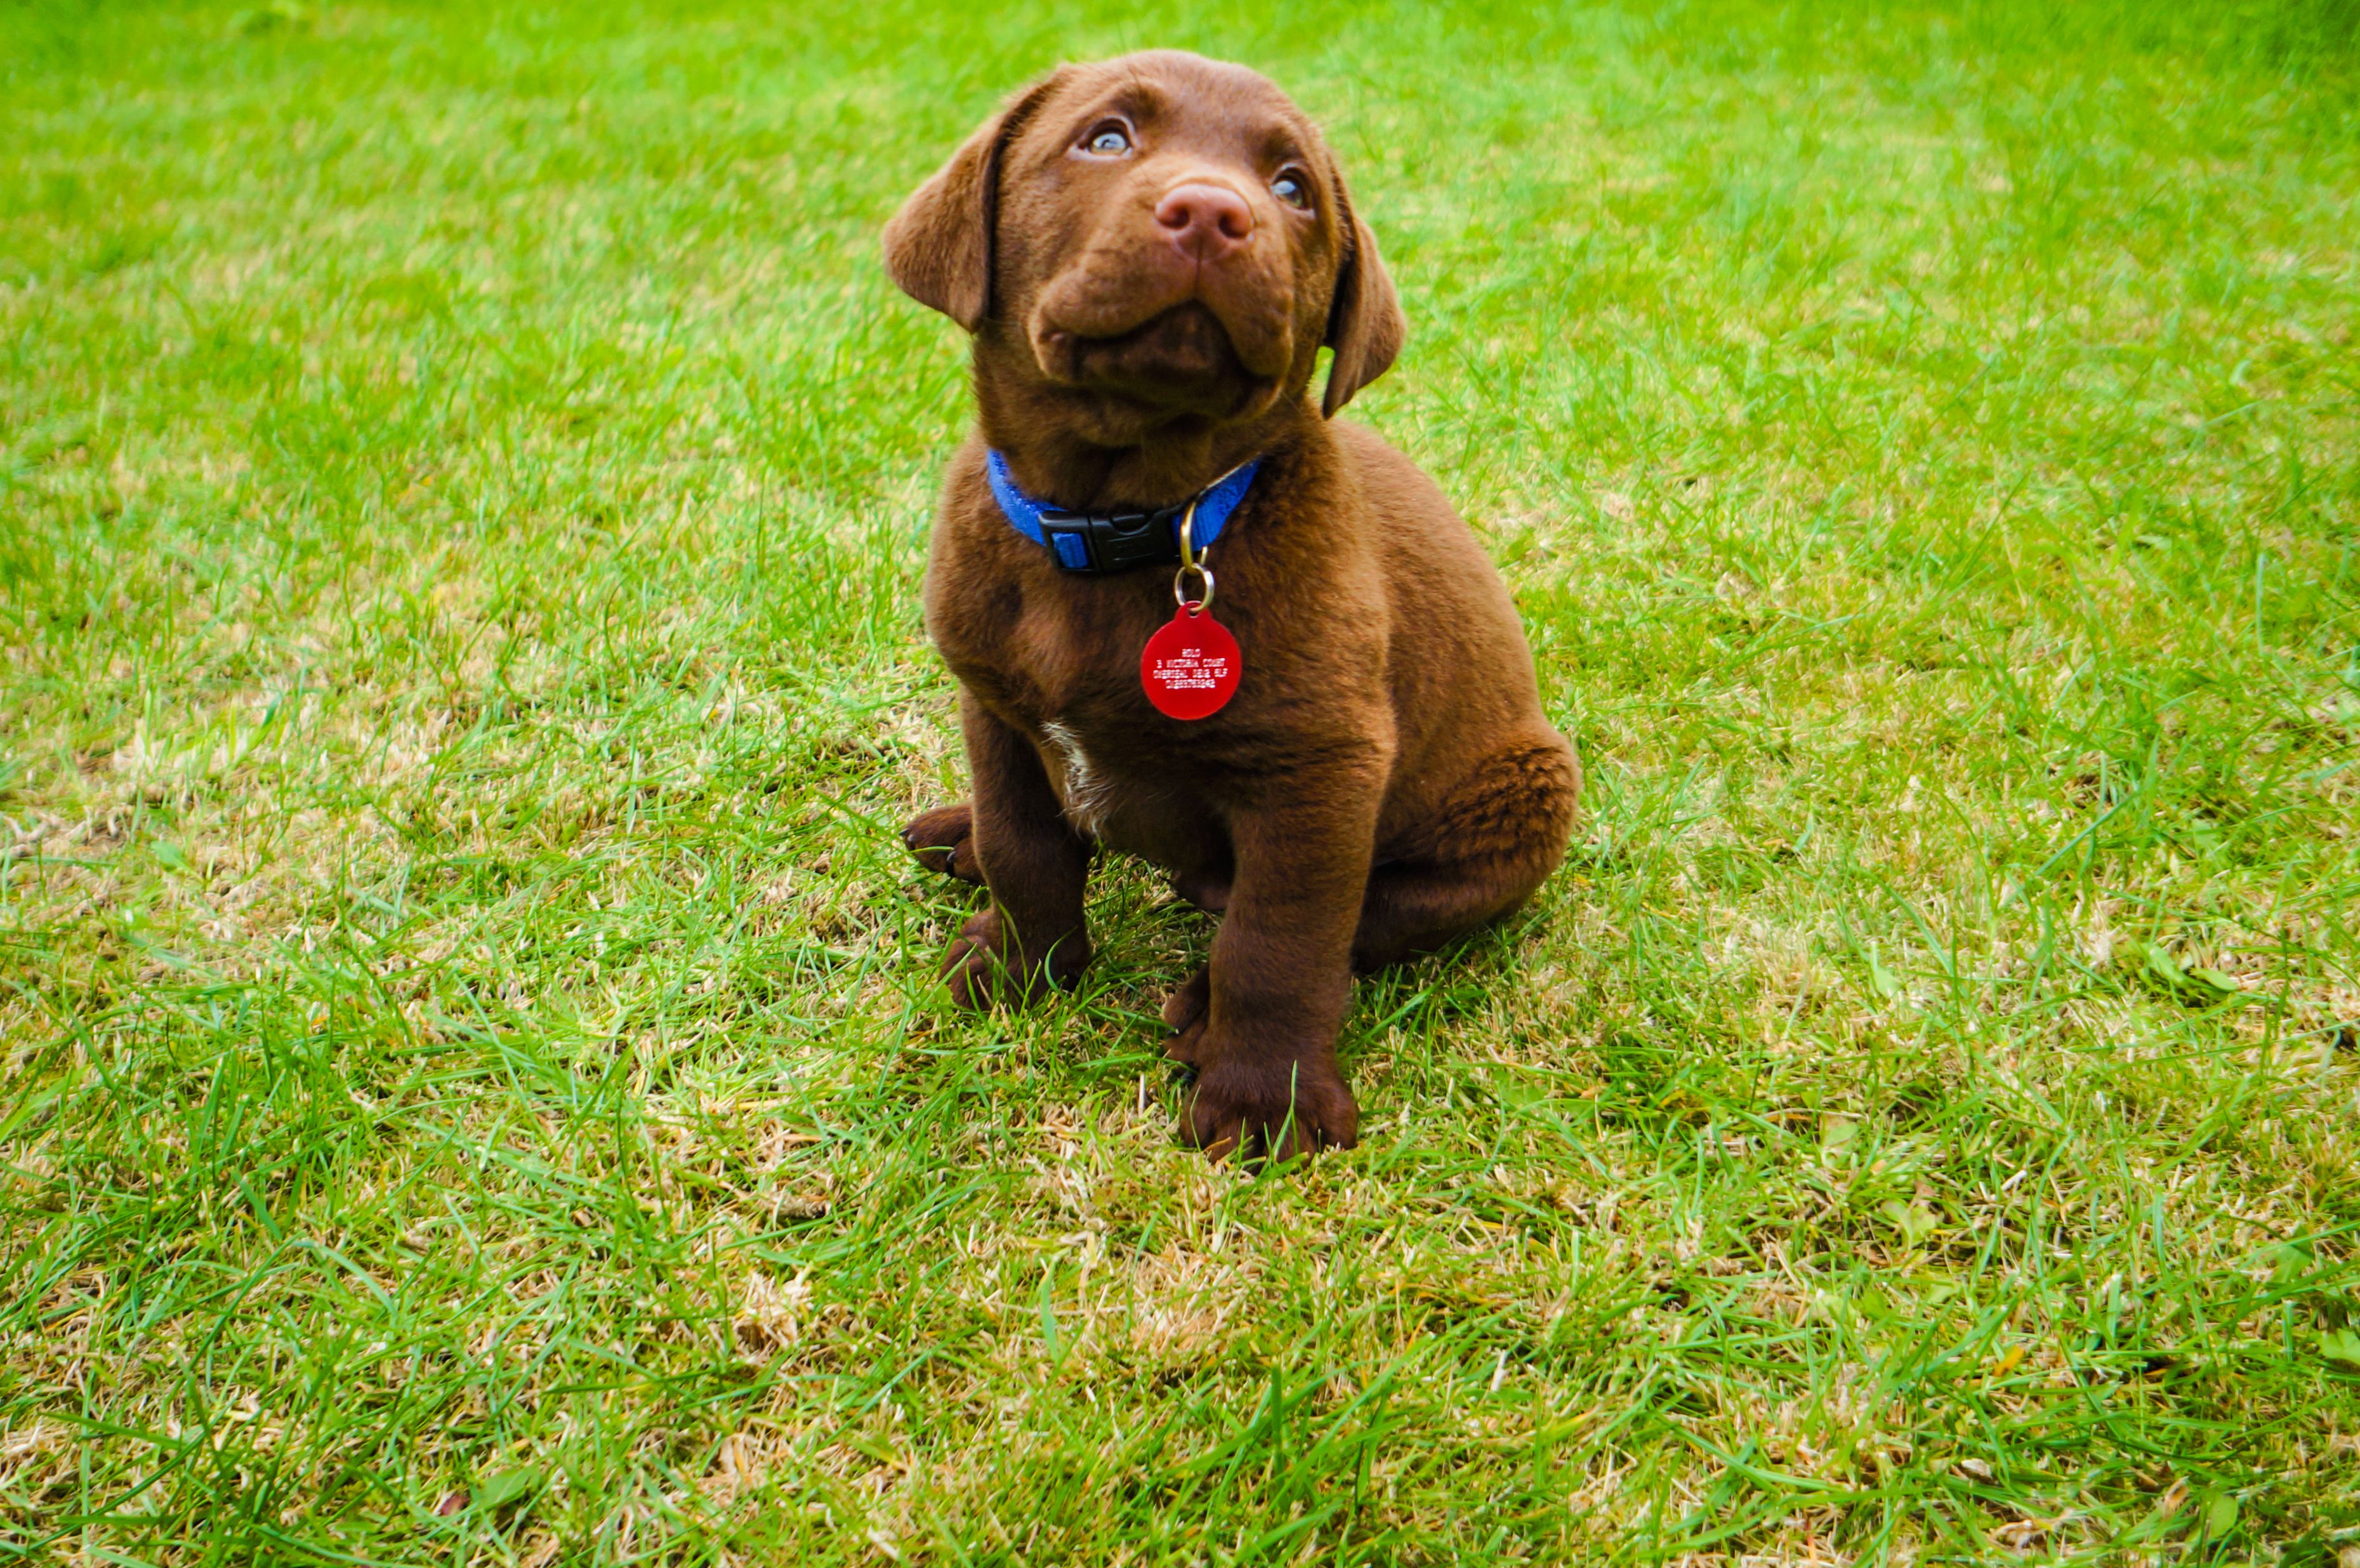 Labrador retriever puppy sitting on grass in park